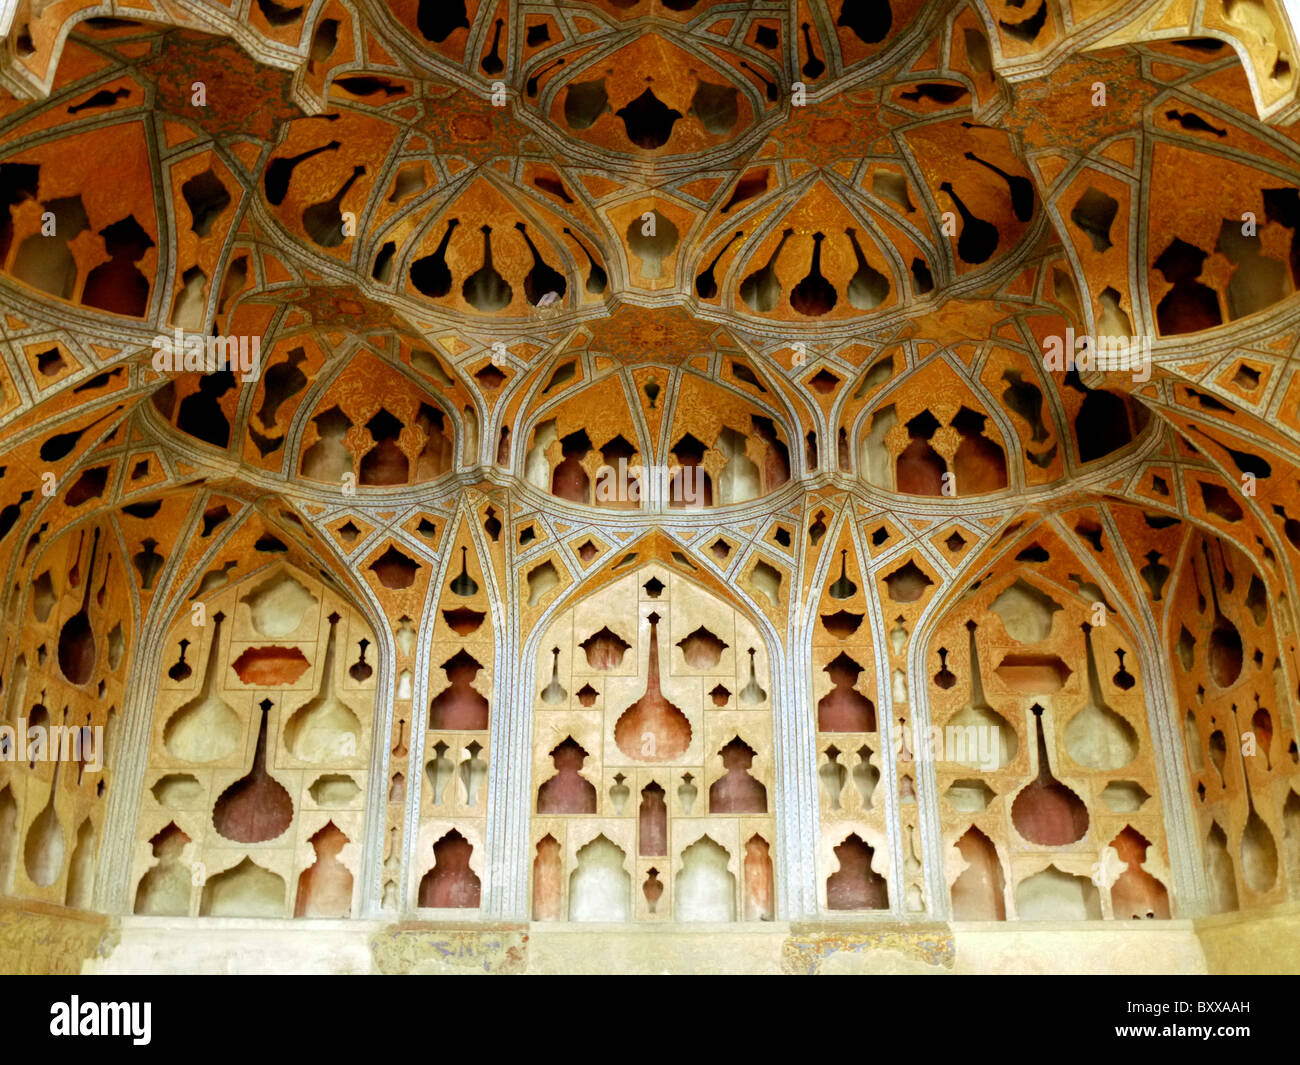 Ornements en stuc toit du palais Ali Qapu, Ispahan, Iran Banque D'Images